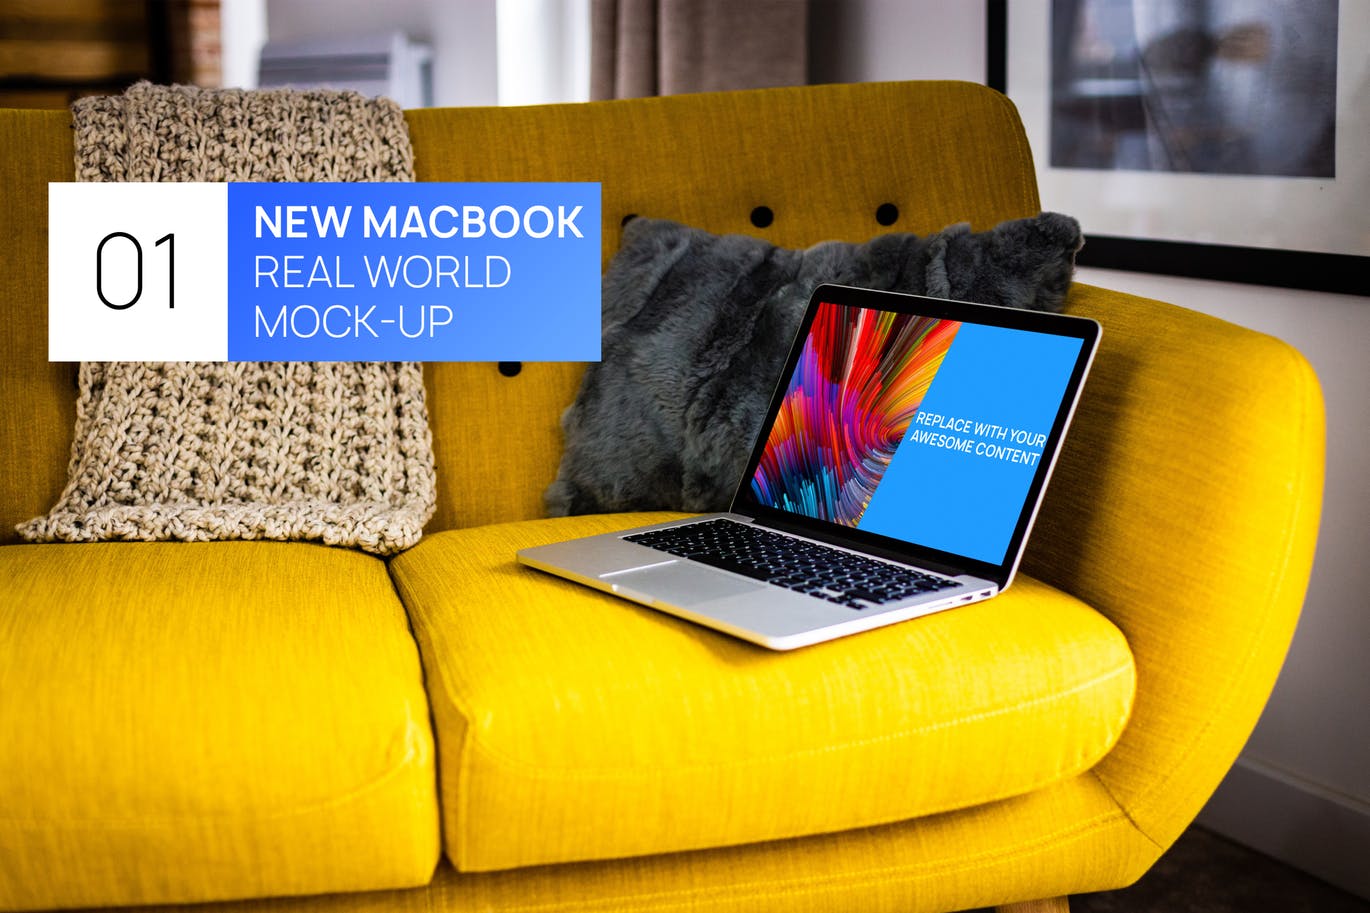 布艺沙发场景MacBook视网膜屏演示素材库精选样机模板 MacBook Retina on Bright Sofa Real World Mock-up插图